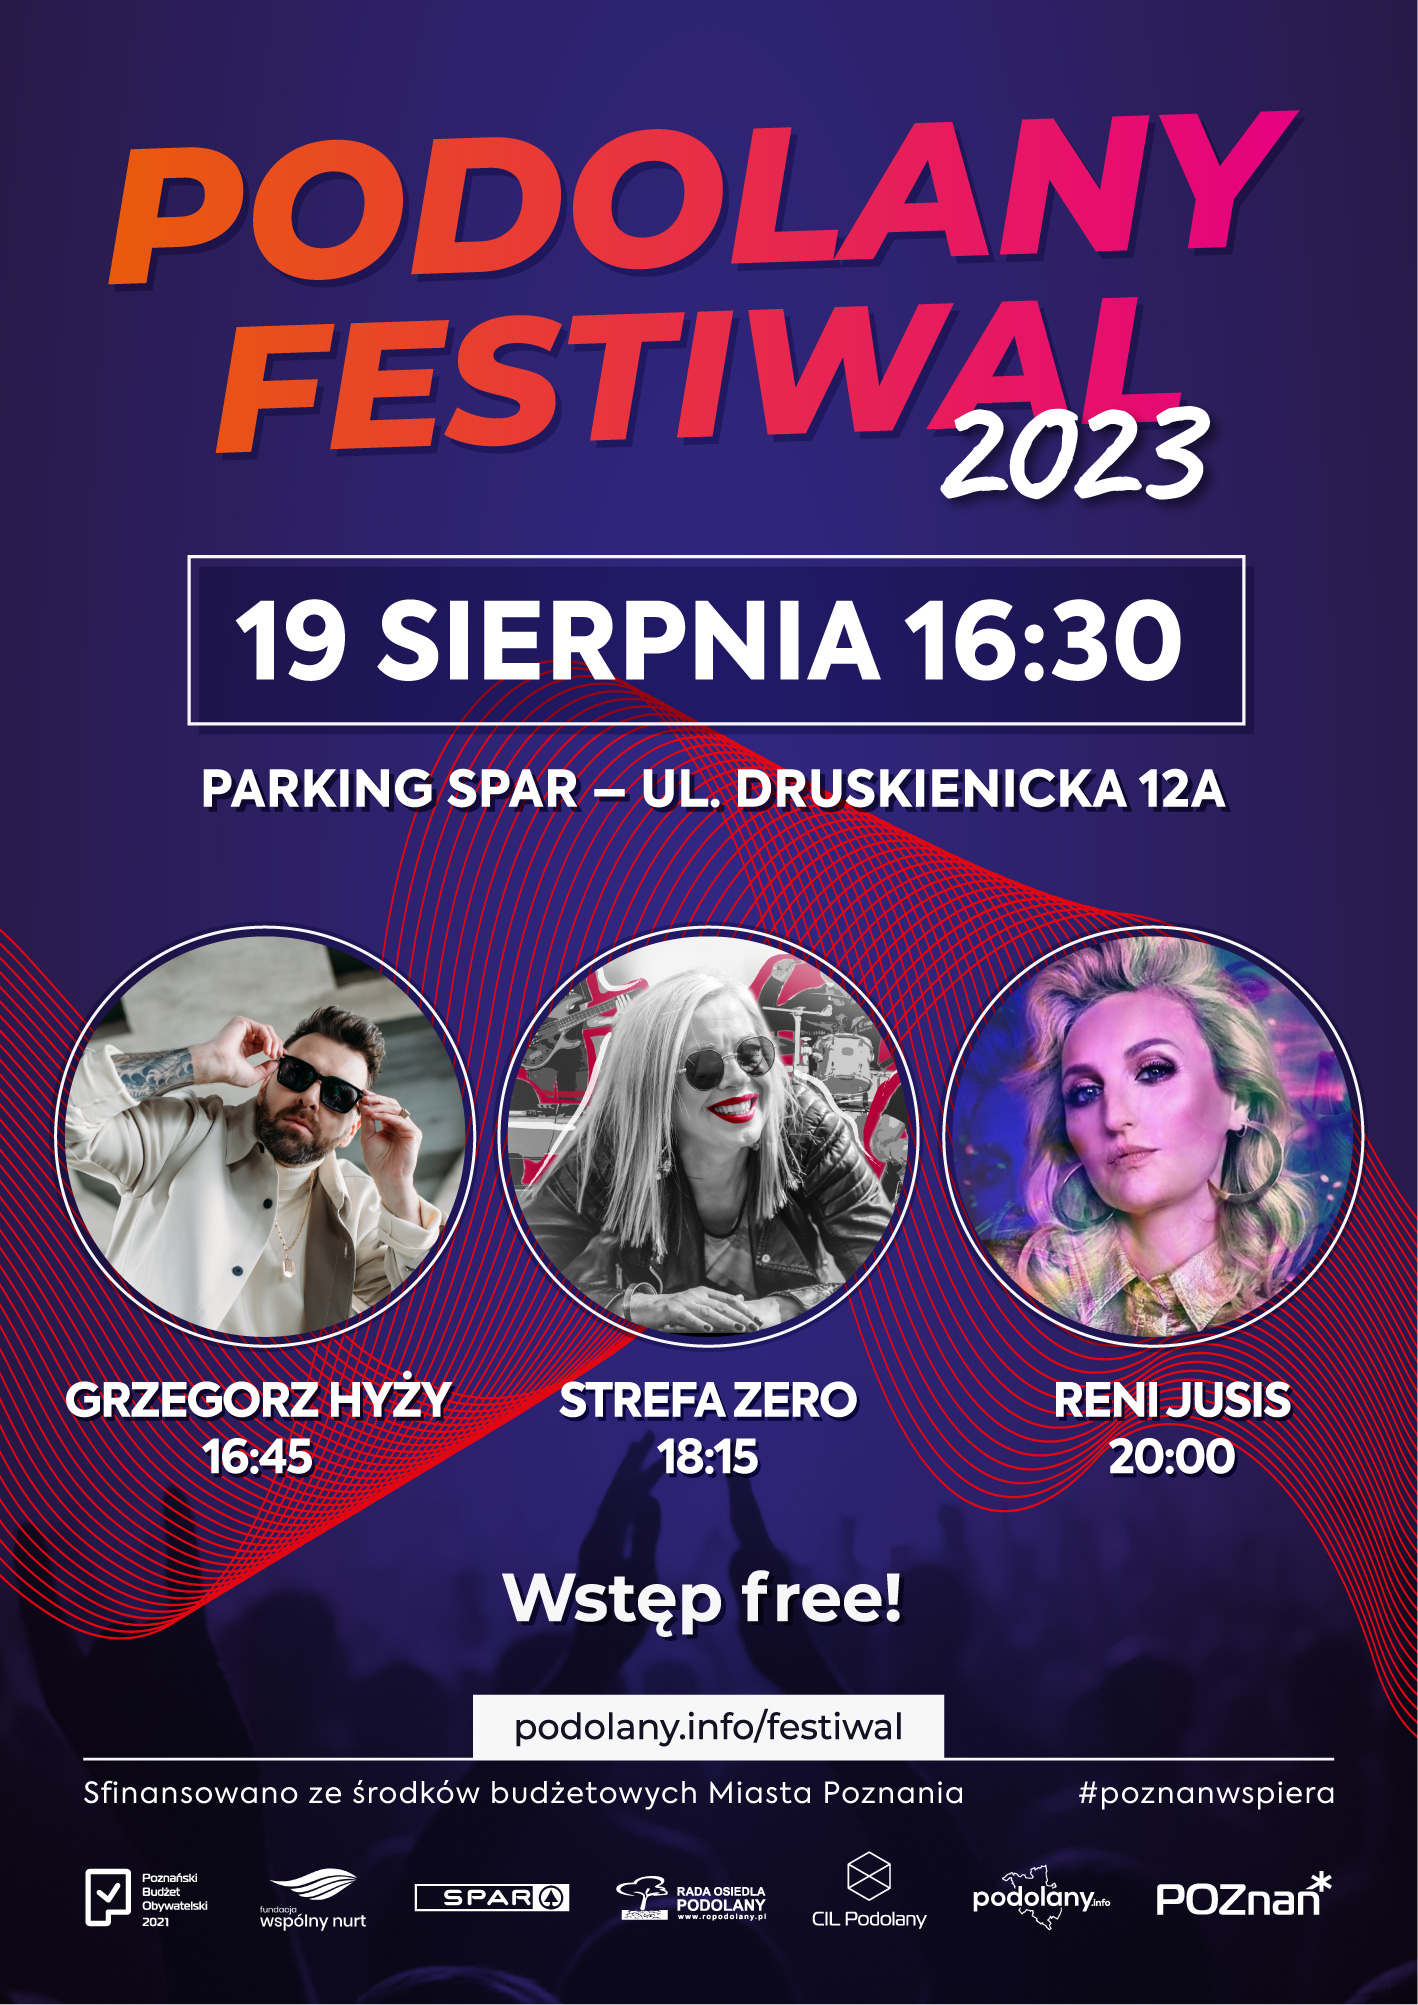 Podolany Festiwal 2023